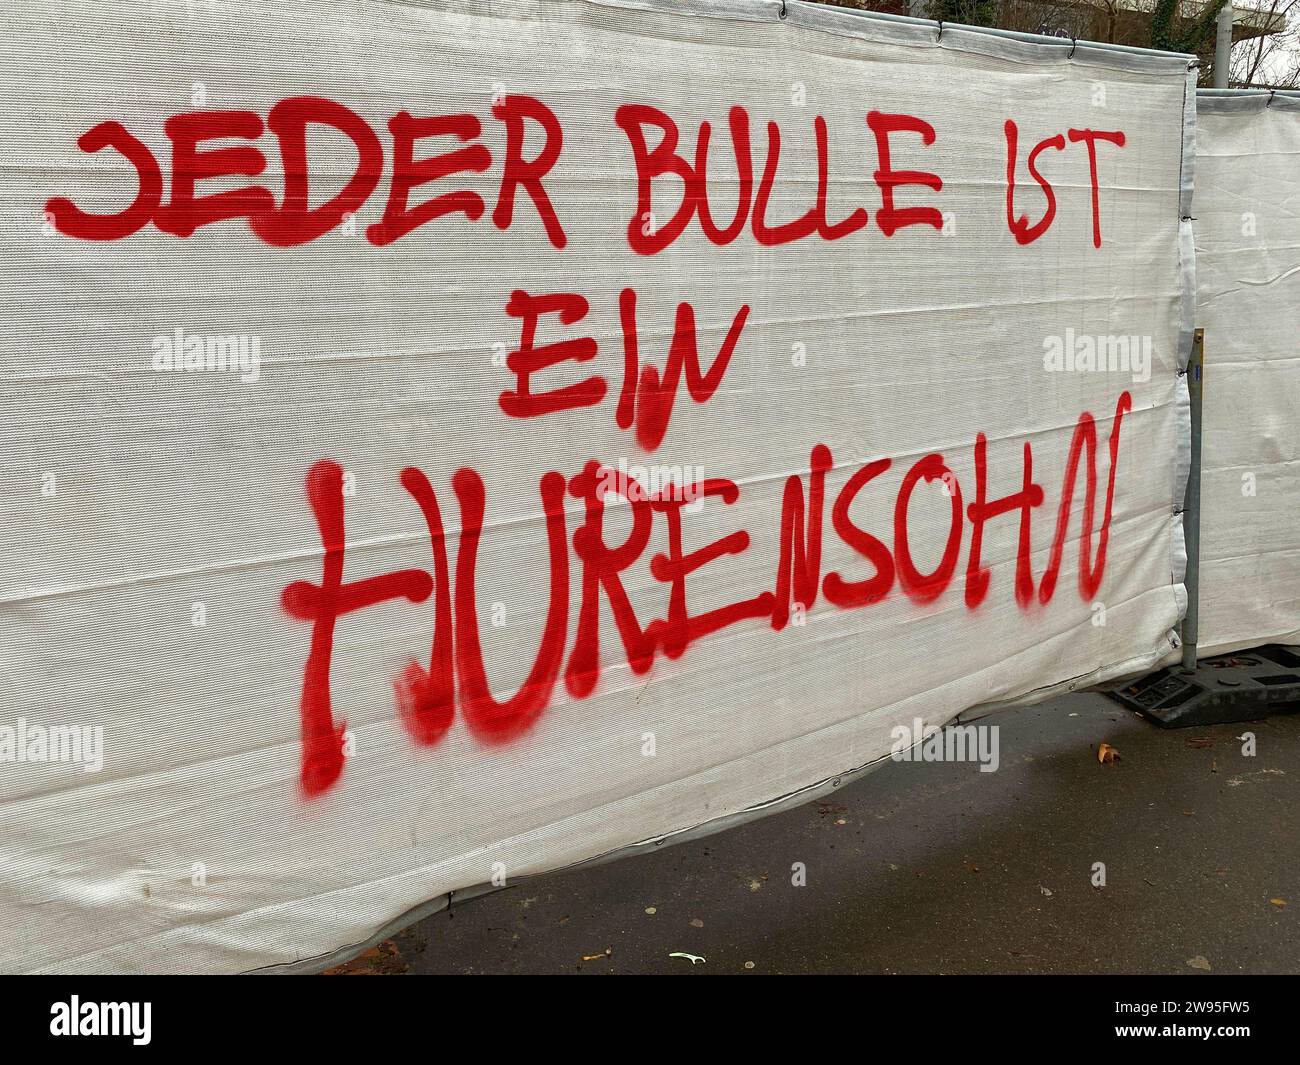 JEDER BULLE IST EIN HURENSOHN, hate speech, hate speech, slogan, insult, graffiti on building fence, red, against police, Bad-Cannstatt, Stuttgart Stock Photo